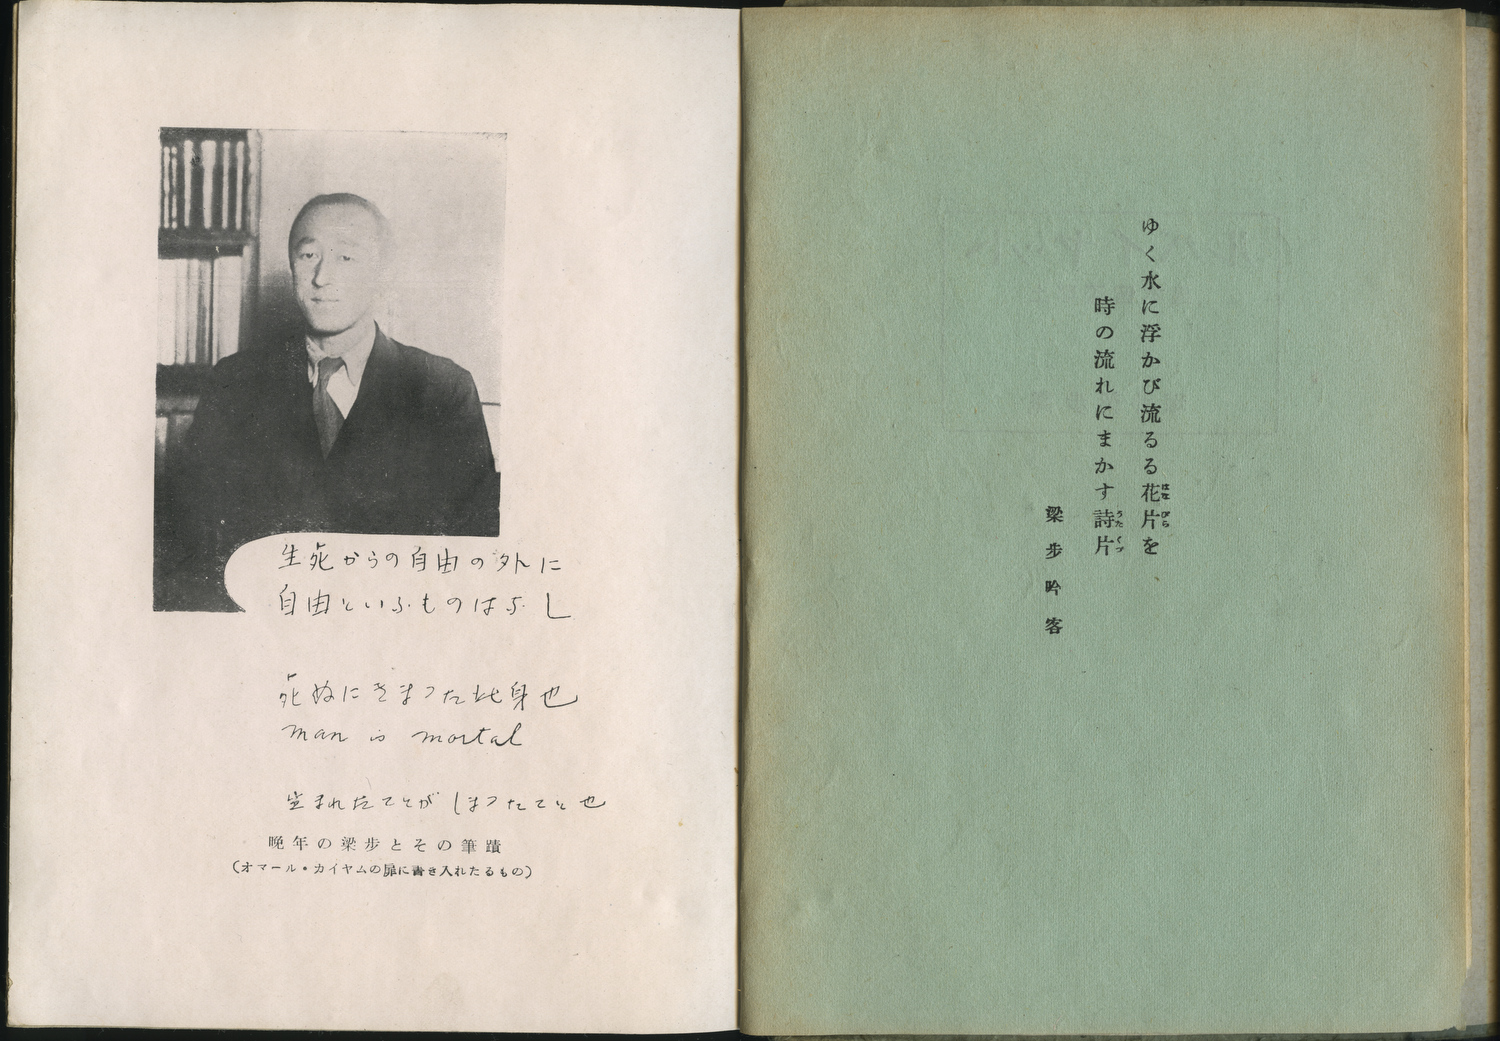 Портрет Хории Рёхо (Кинтаро) в книге “Рубайят”, переведенной Хории. Справа его стих, опубликованный в конце текста.